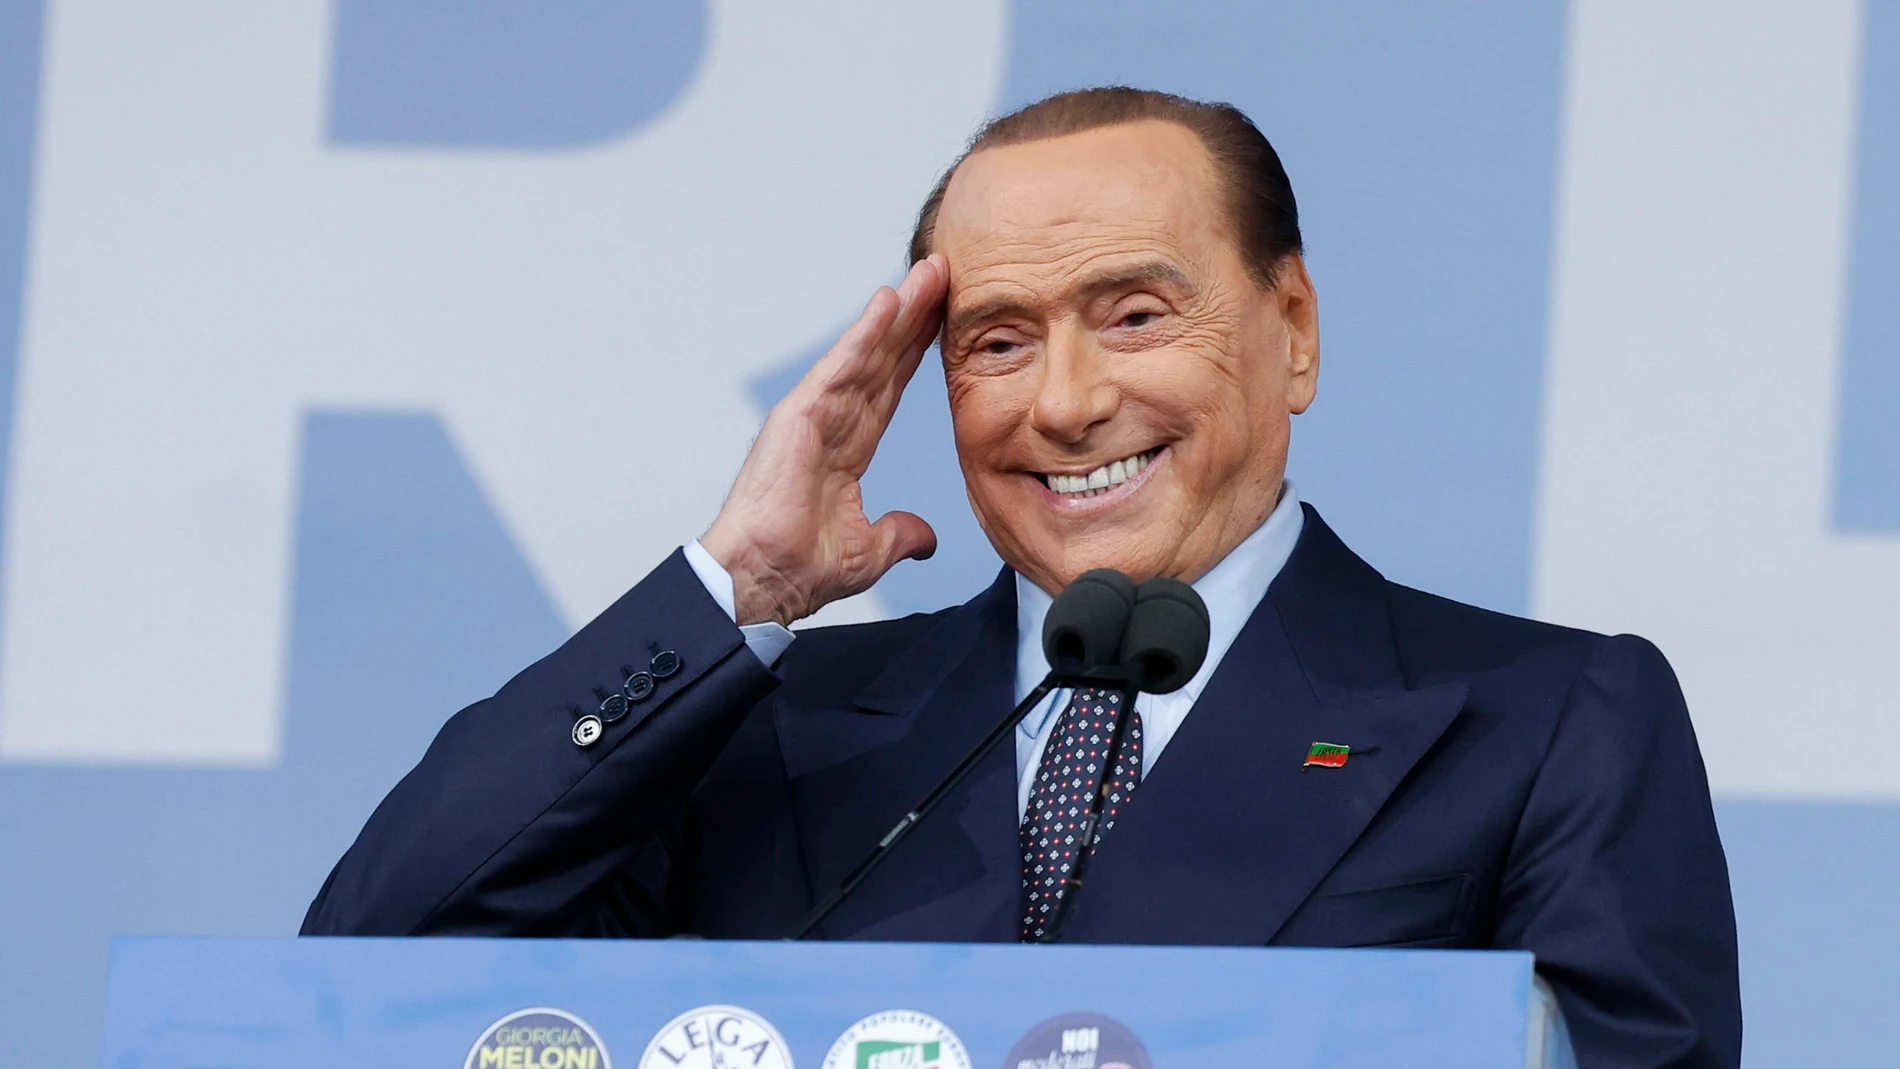 El presidente del partido italiano 'Forza Italia', Silvio Berlusconi